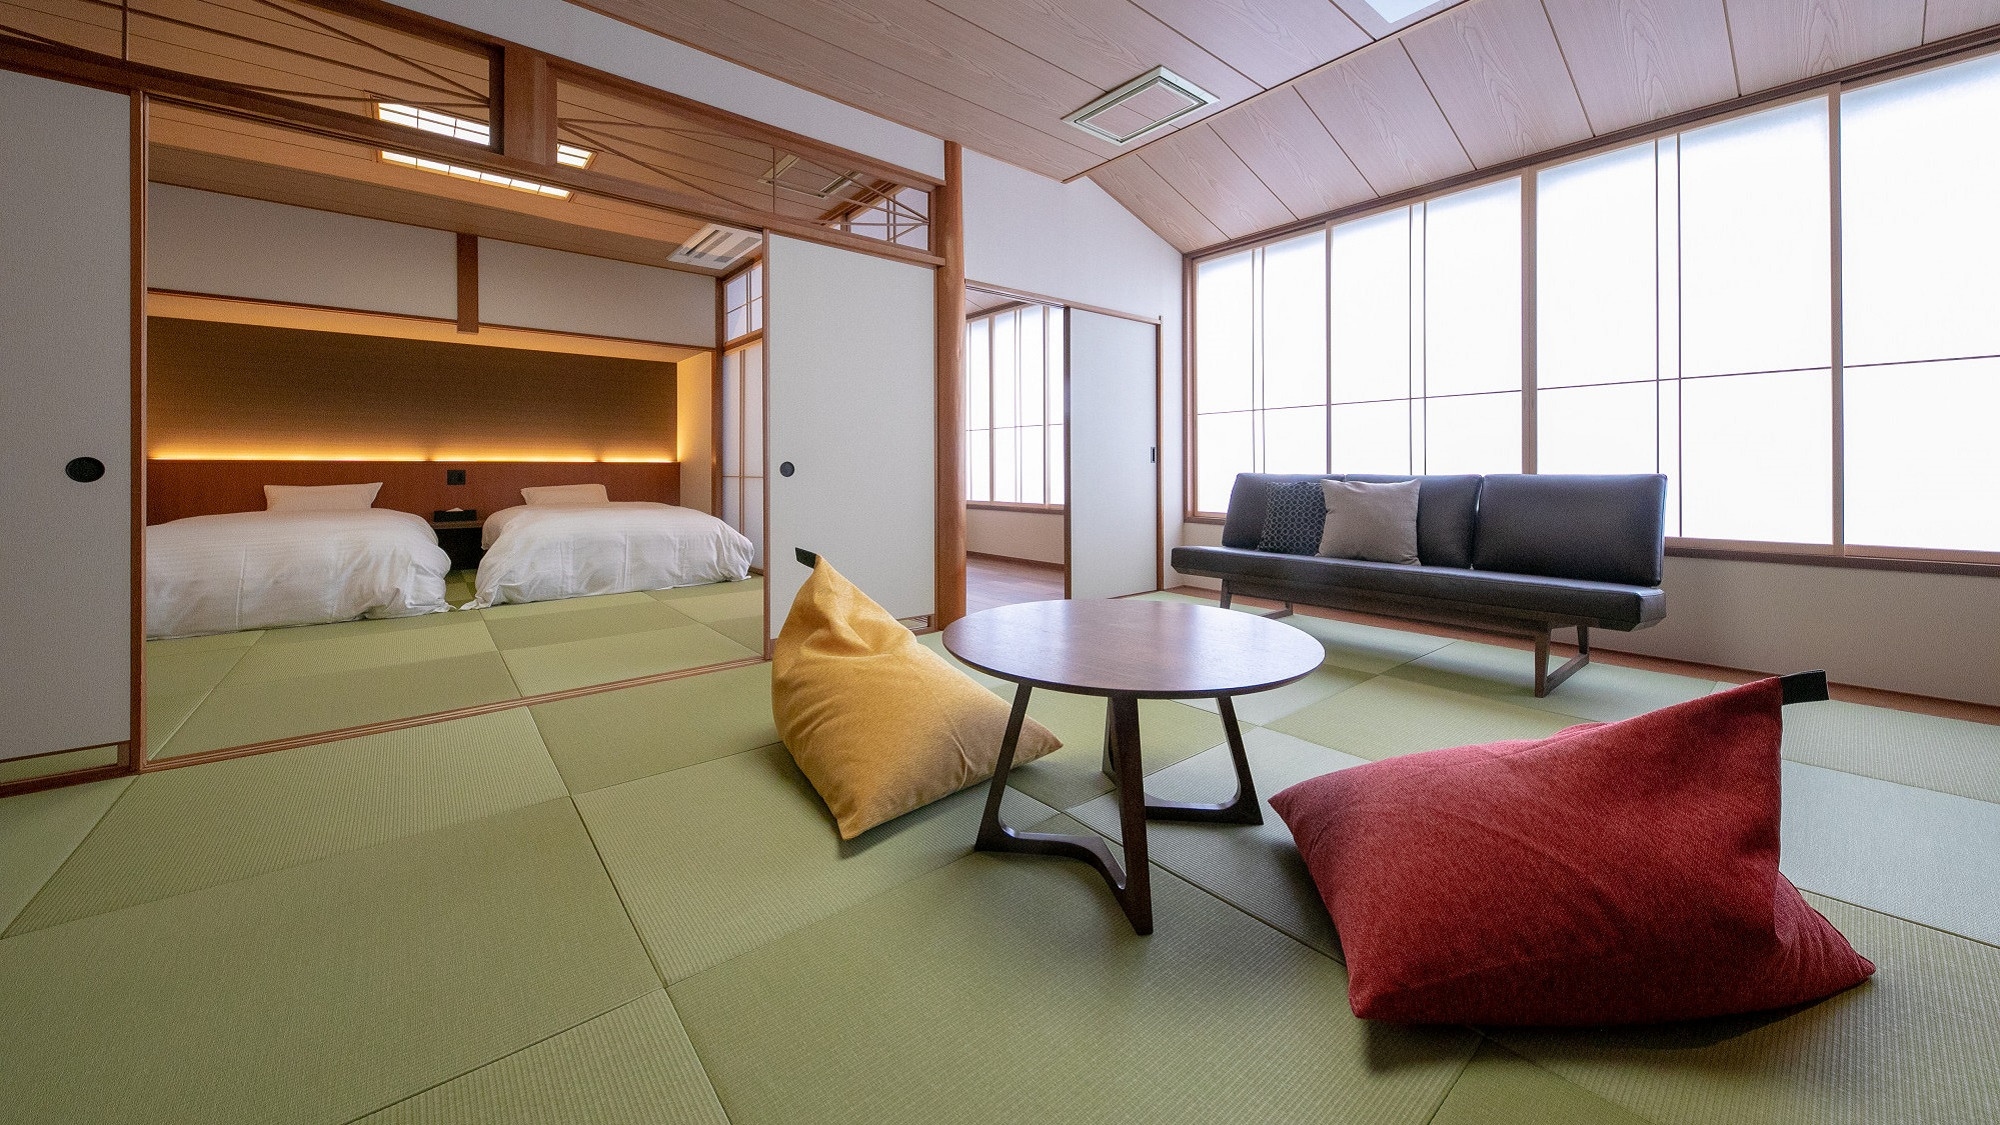 ห้องสไตล์ญี่ปุ่นและตะวันตก: ห้องสไตล์ญี่ปุ่นพร้อมเตียงแฝด + โซฟา ห้ามสูบบุหรี่